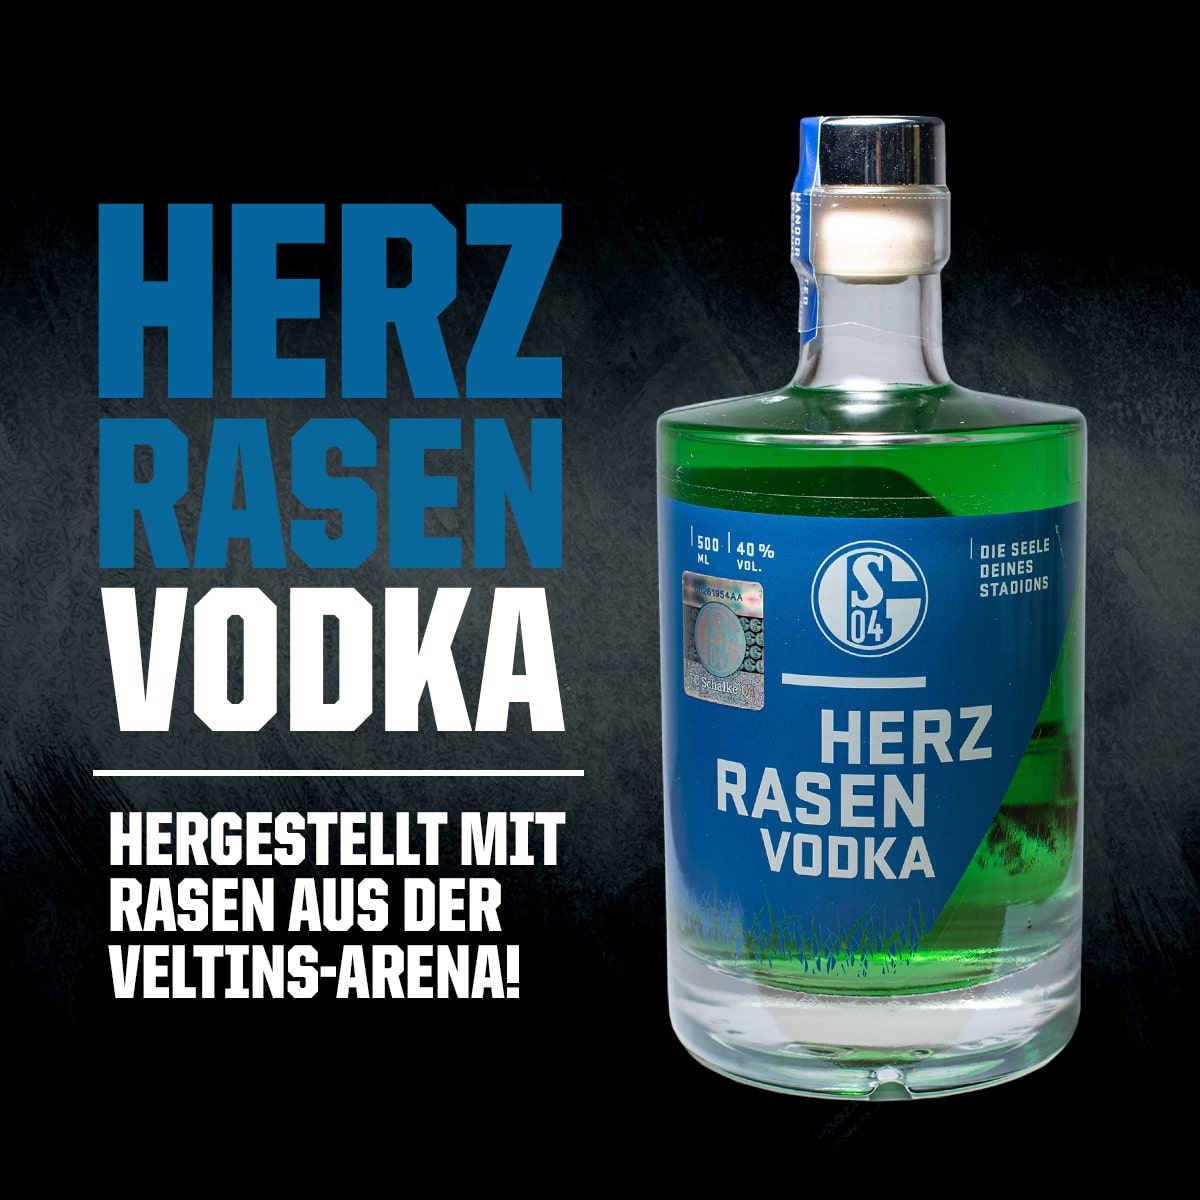 Herzrasen Vodka Schalke